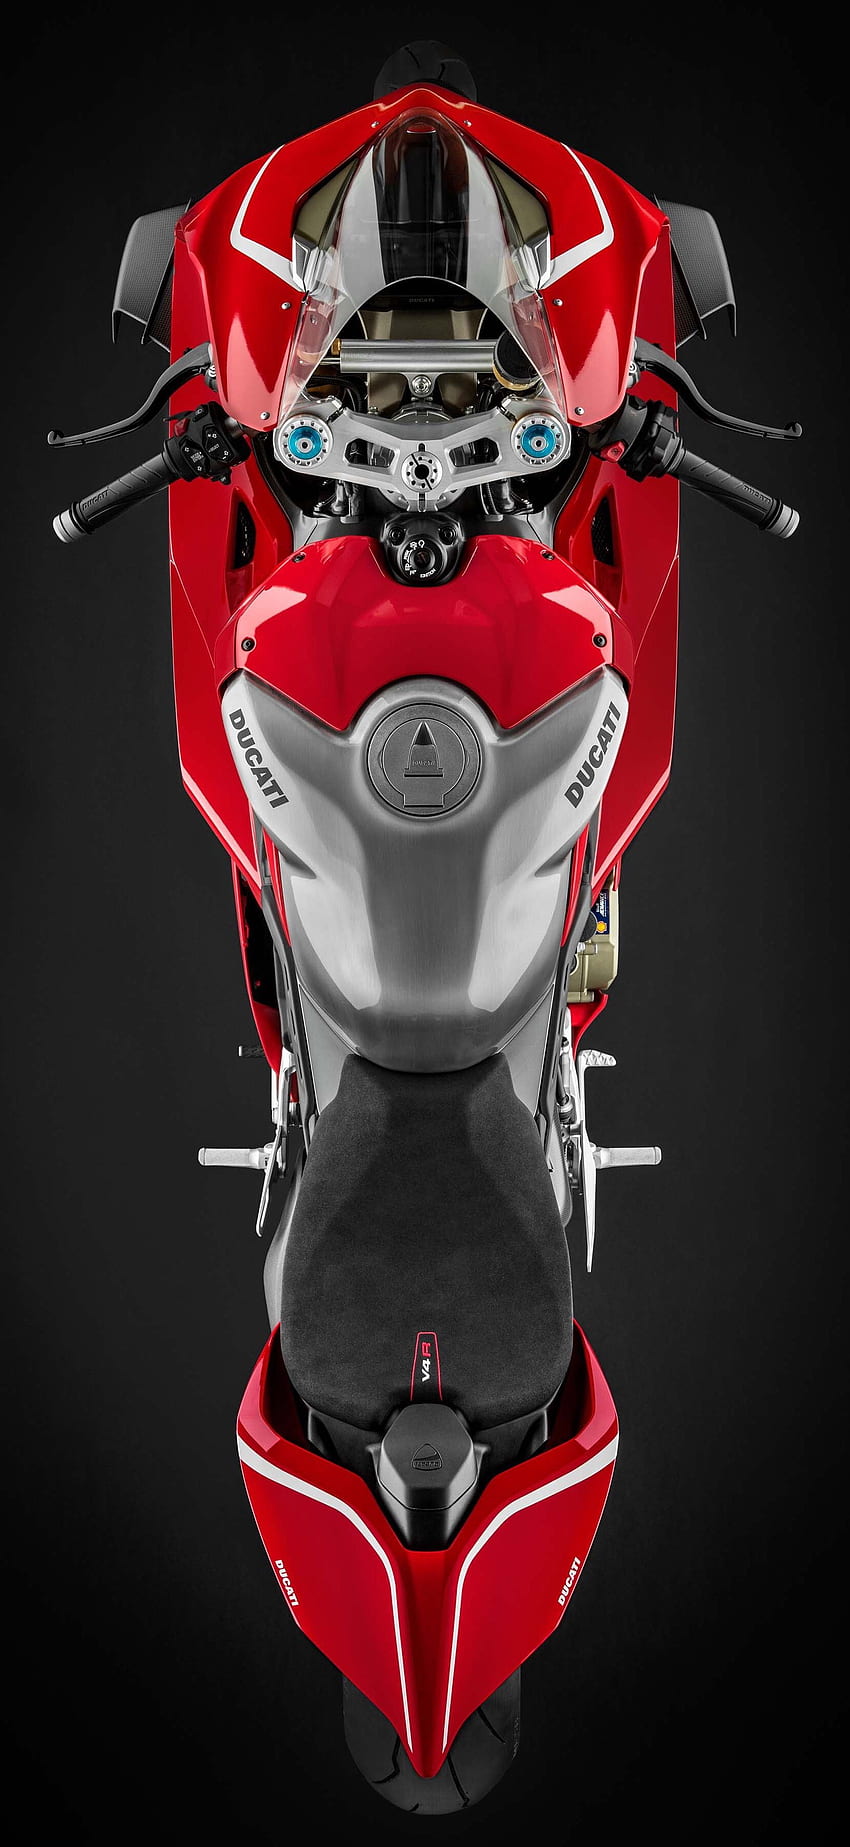 Ducati Panigale V4 R, 217cv. Ducati, moto Ducati fondo de pantalla del teléfono